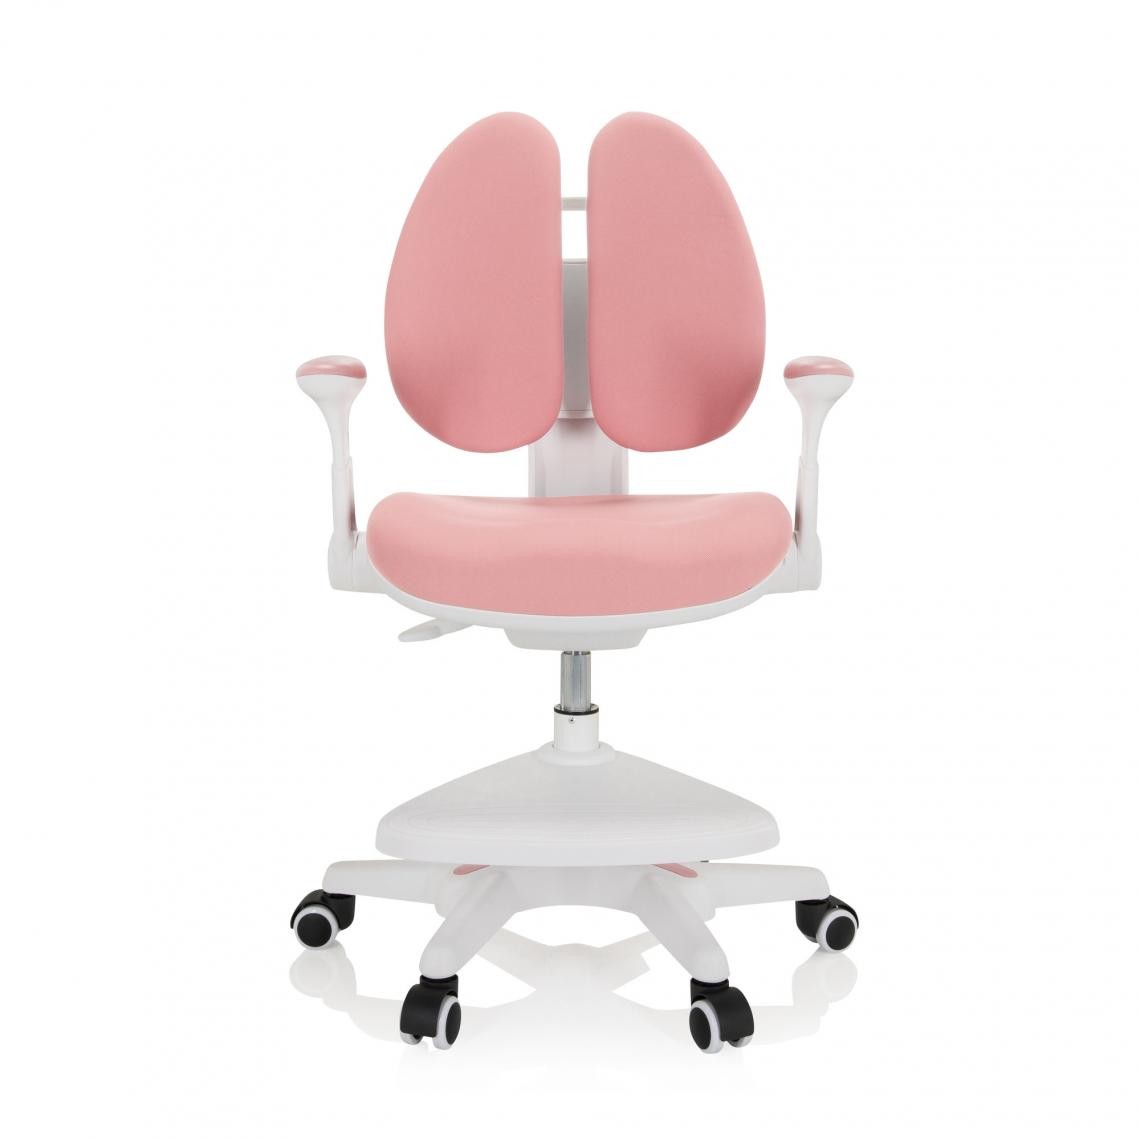 Hjh Office - Chaise de bureau pour enfant KID WING Tissu rose hjh OFFICE - Chaises